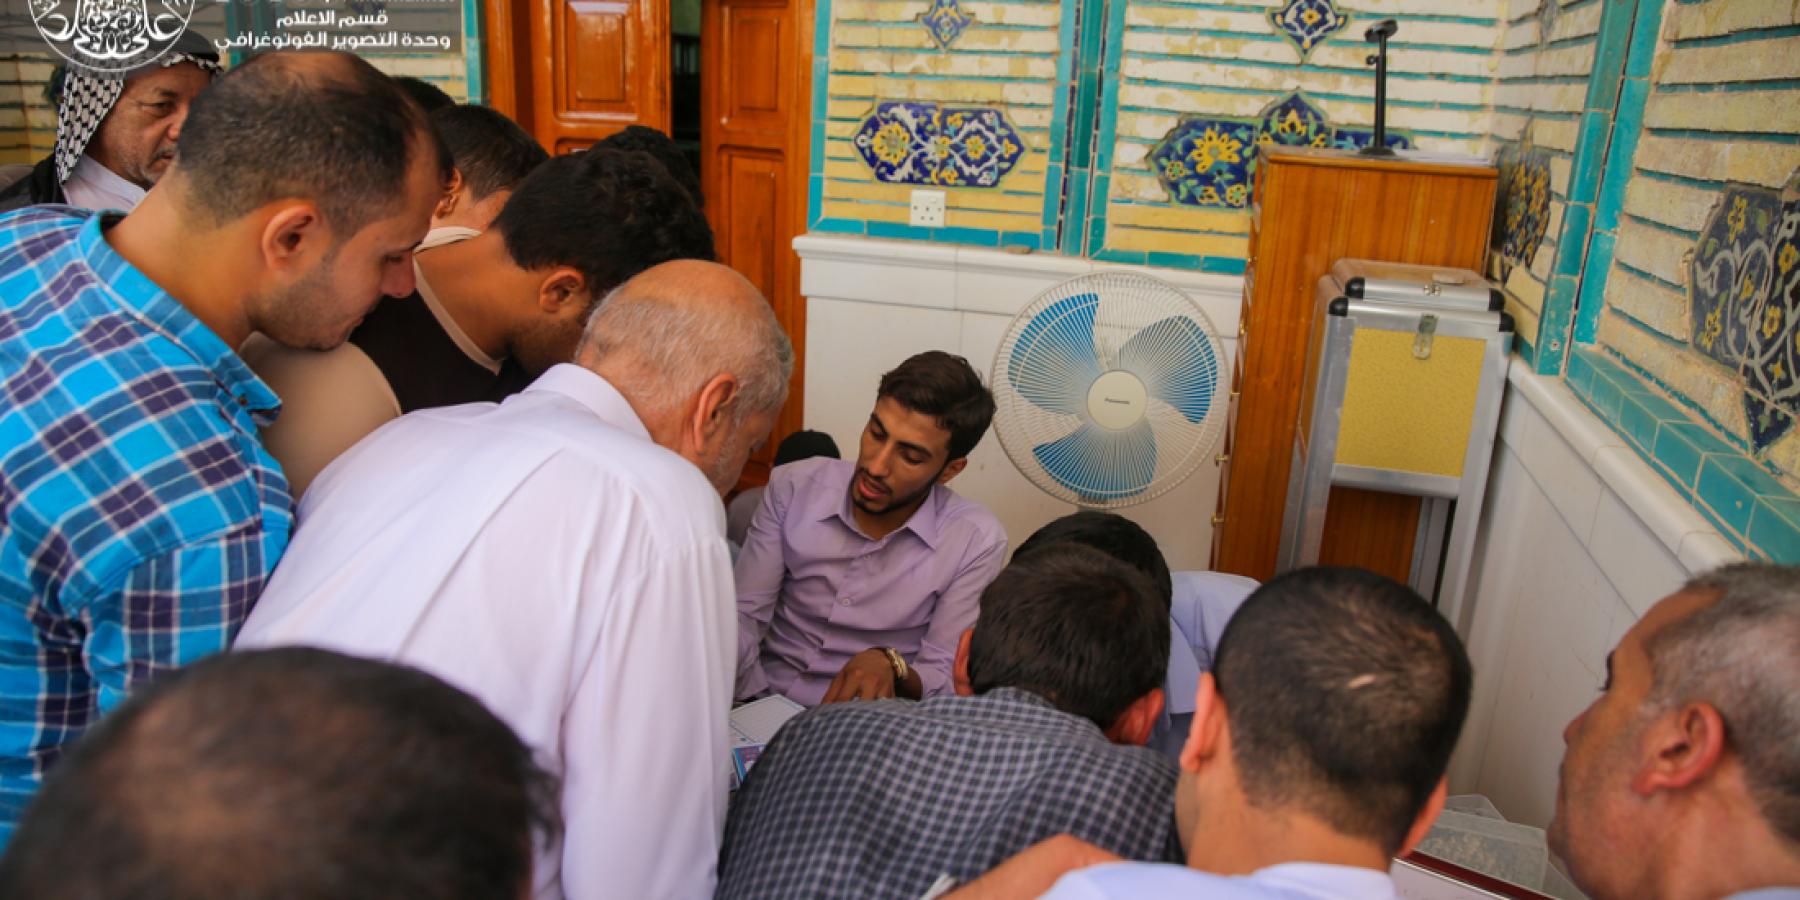 قسم الشؤون الدينية يطلق مشروع تصحيح القراءة لسورة الفاتحة المباركة للزائرين الكرام في عيد الغدير الأغر 